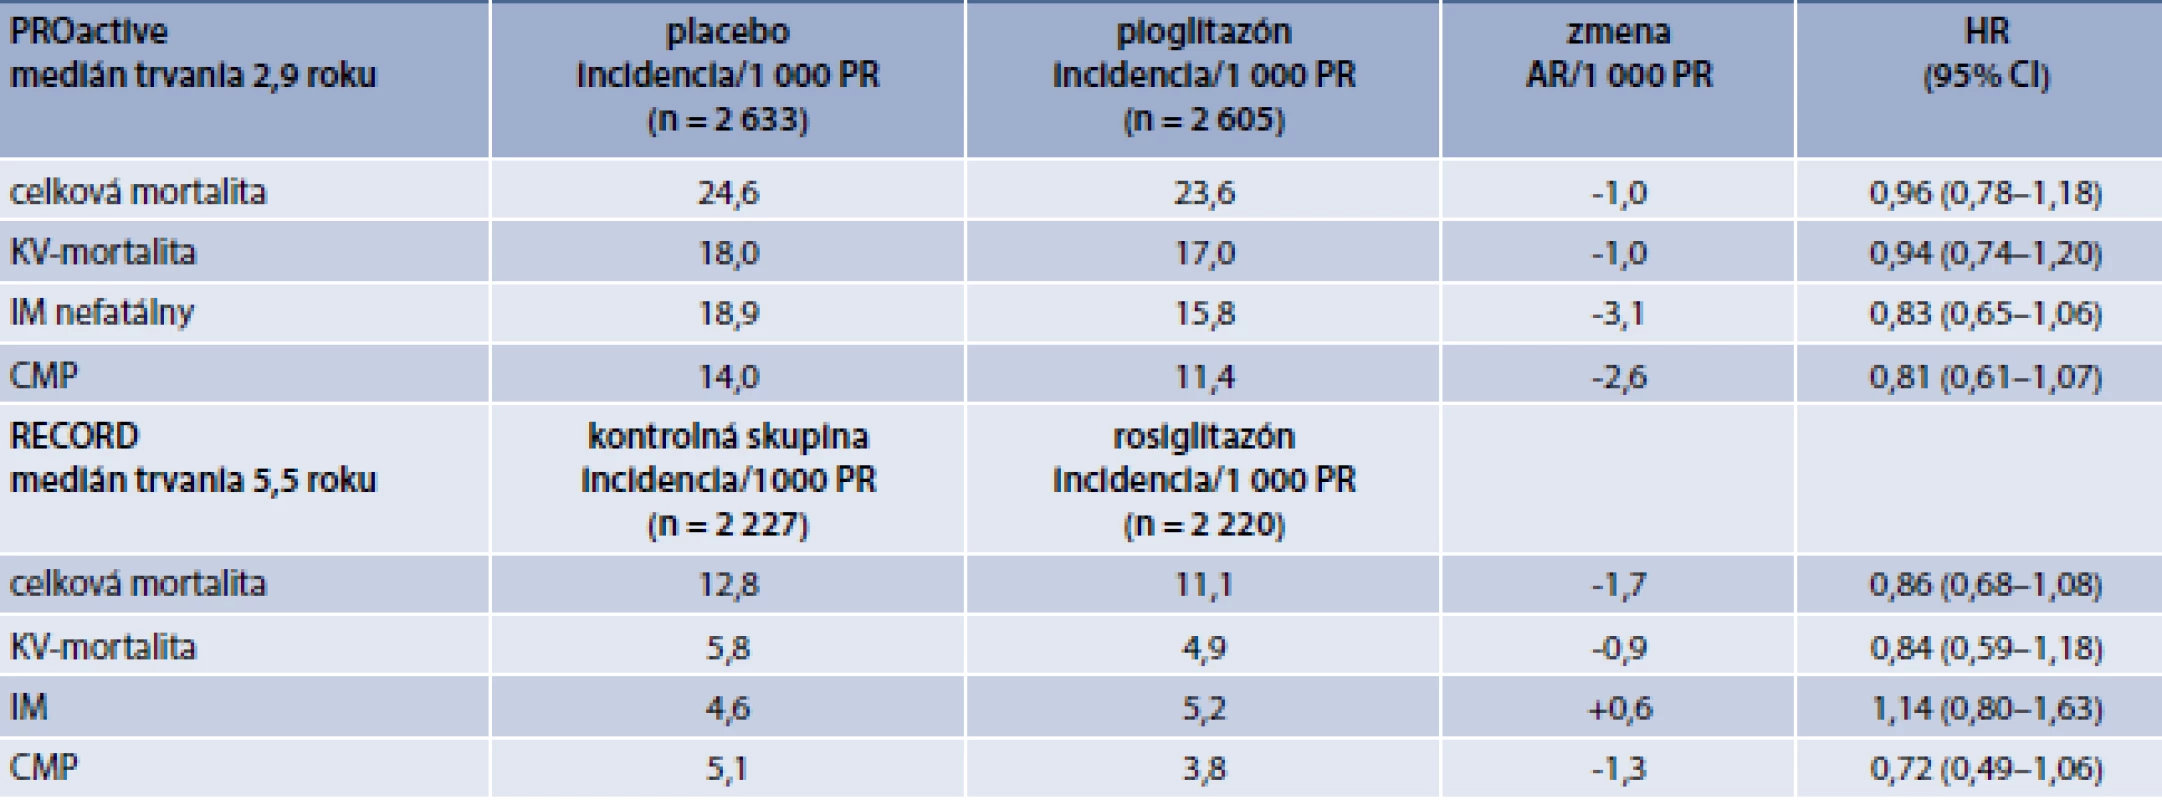 Kardiovaskulárne a mortalitné výsledky štúdií s glitazónmi (PROactive, RECORD)